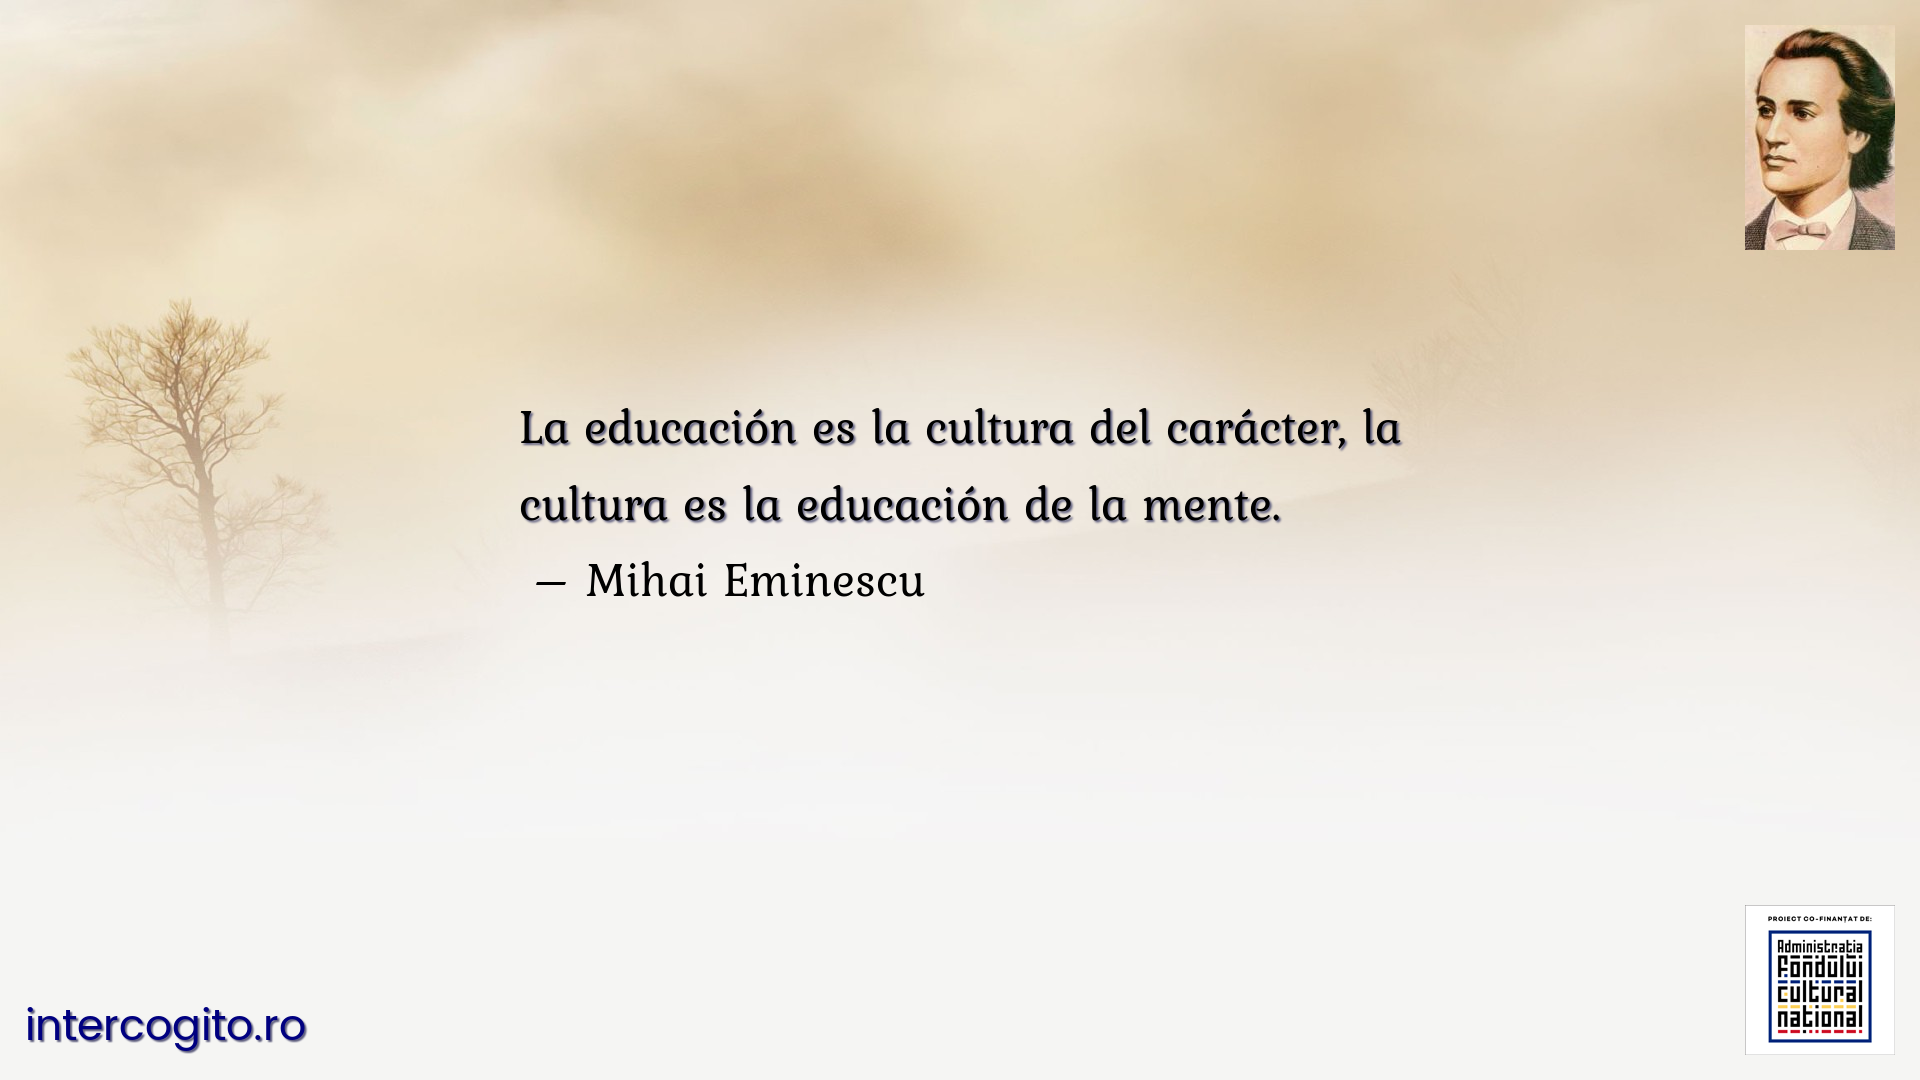 La educación es la cultura del carácter, la cultura es la educación de la mente.